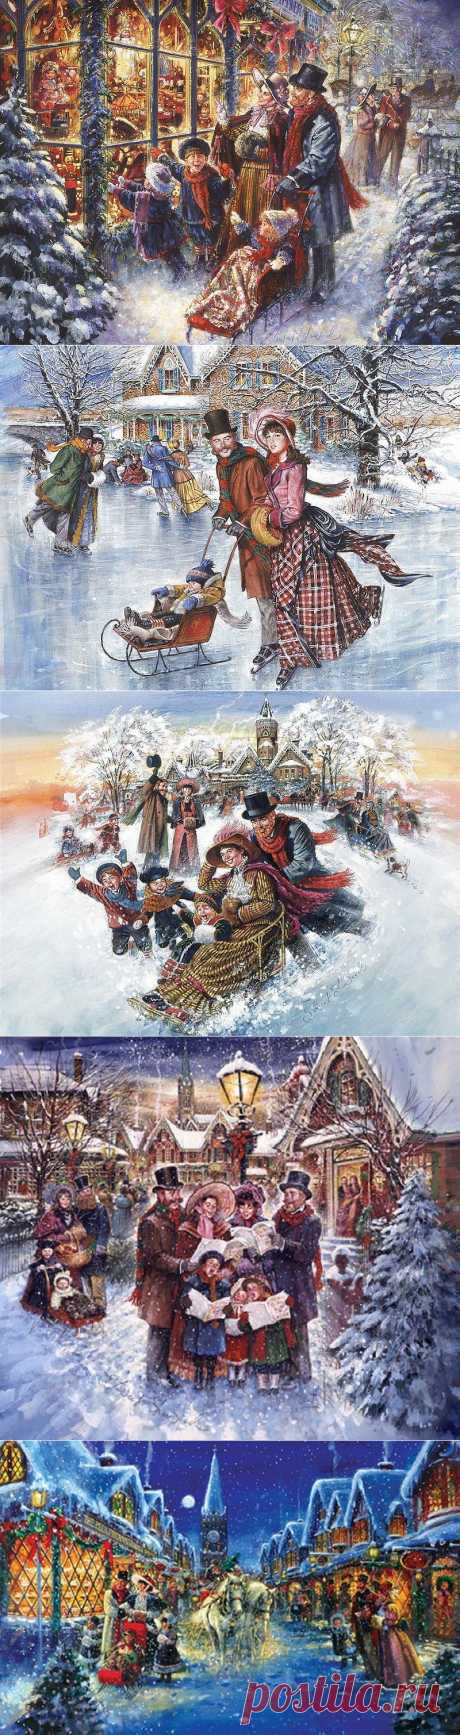 Художник-самоучка из Канады Stewart Sherwood | Этот добрый зимний праздник Входит сказкой в каждый дом.....